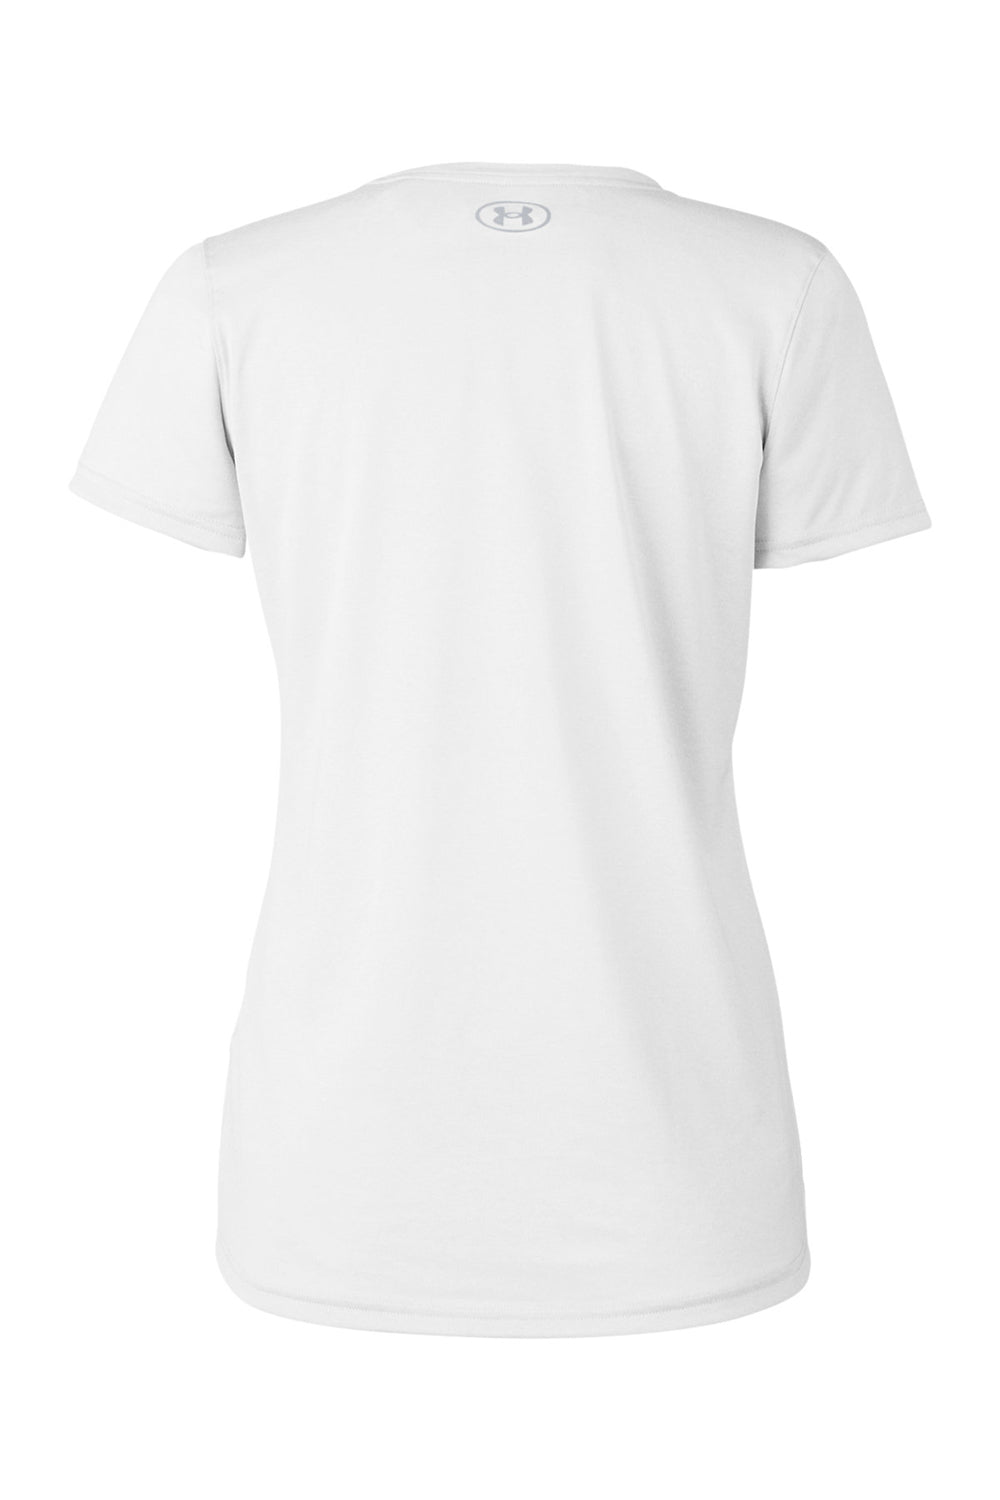 Under Armour 1376847 Womens Team Tech Moisture Wicking Short Sleeve Crewneck T-Shirt White Flat Back